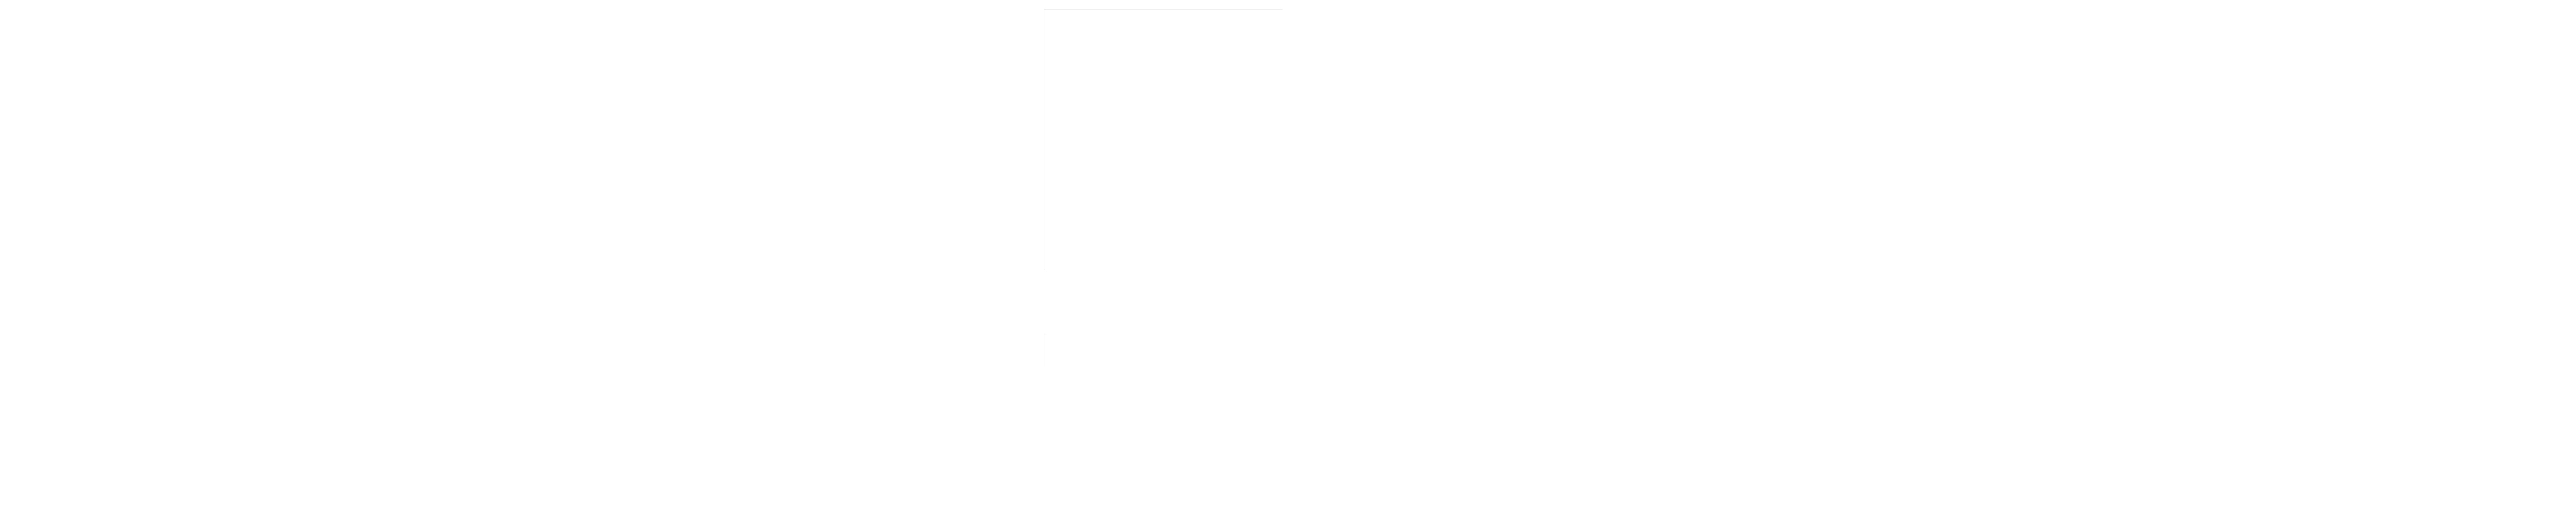 SHUSHI